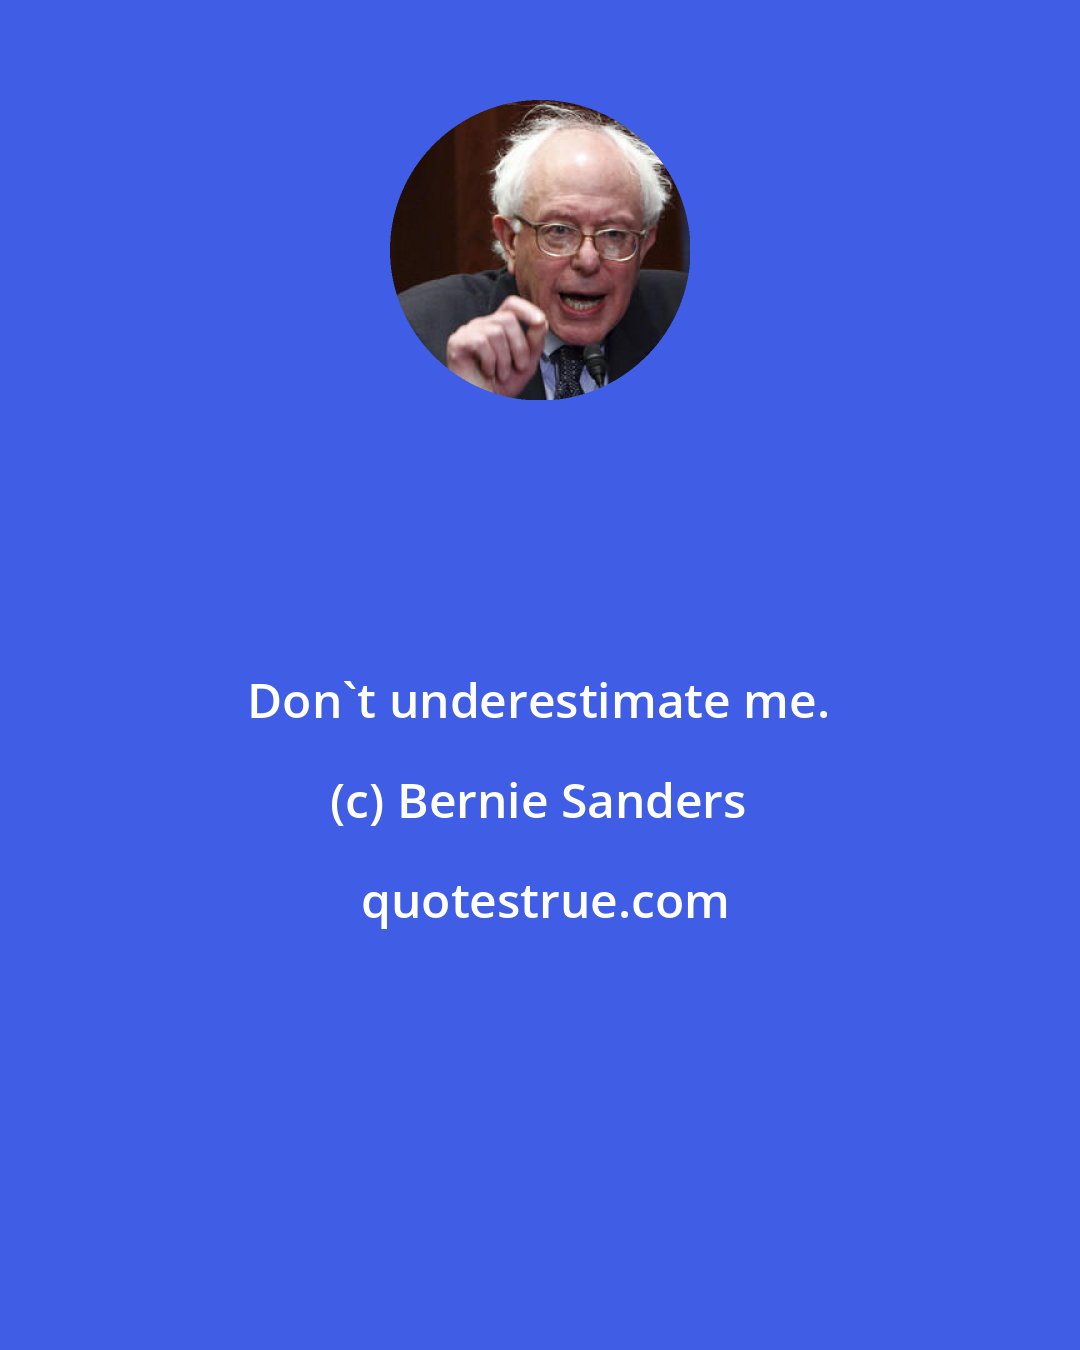 Bernie Sanders: Don't underestimate me.